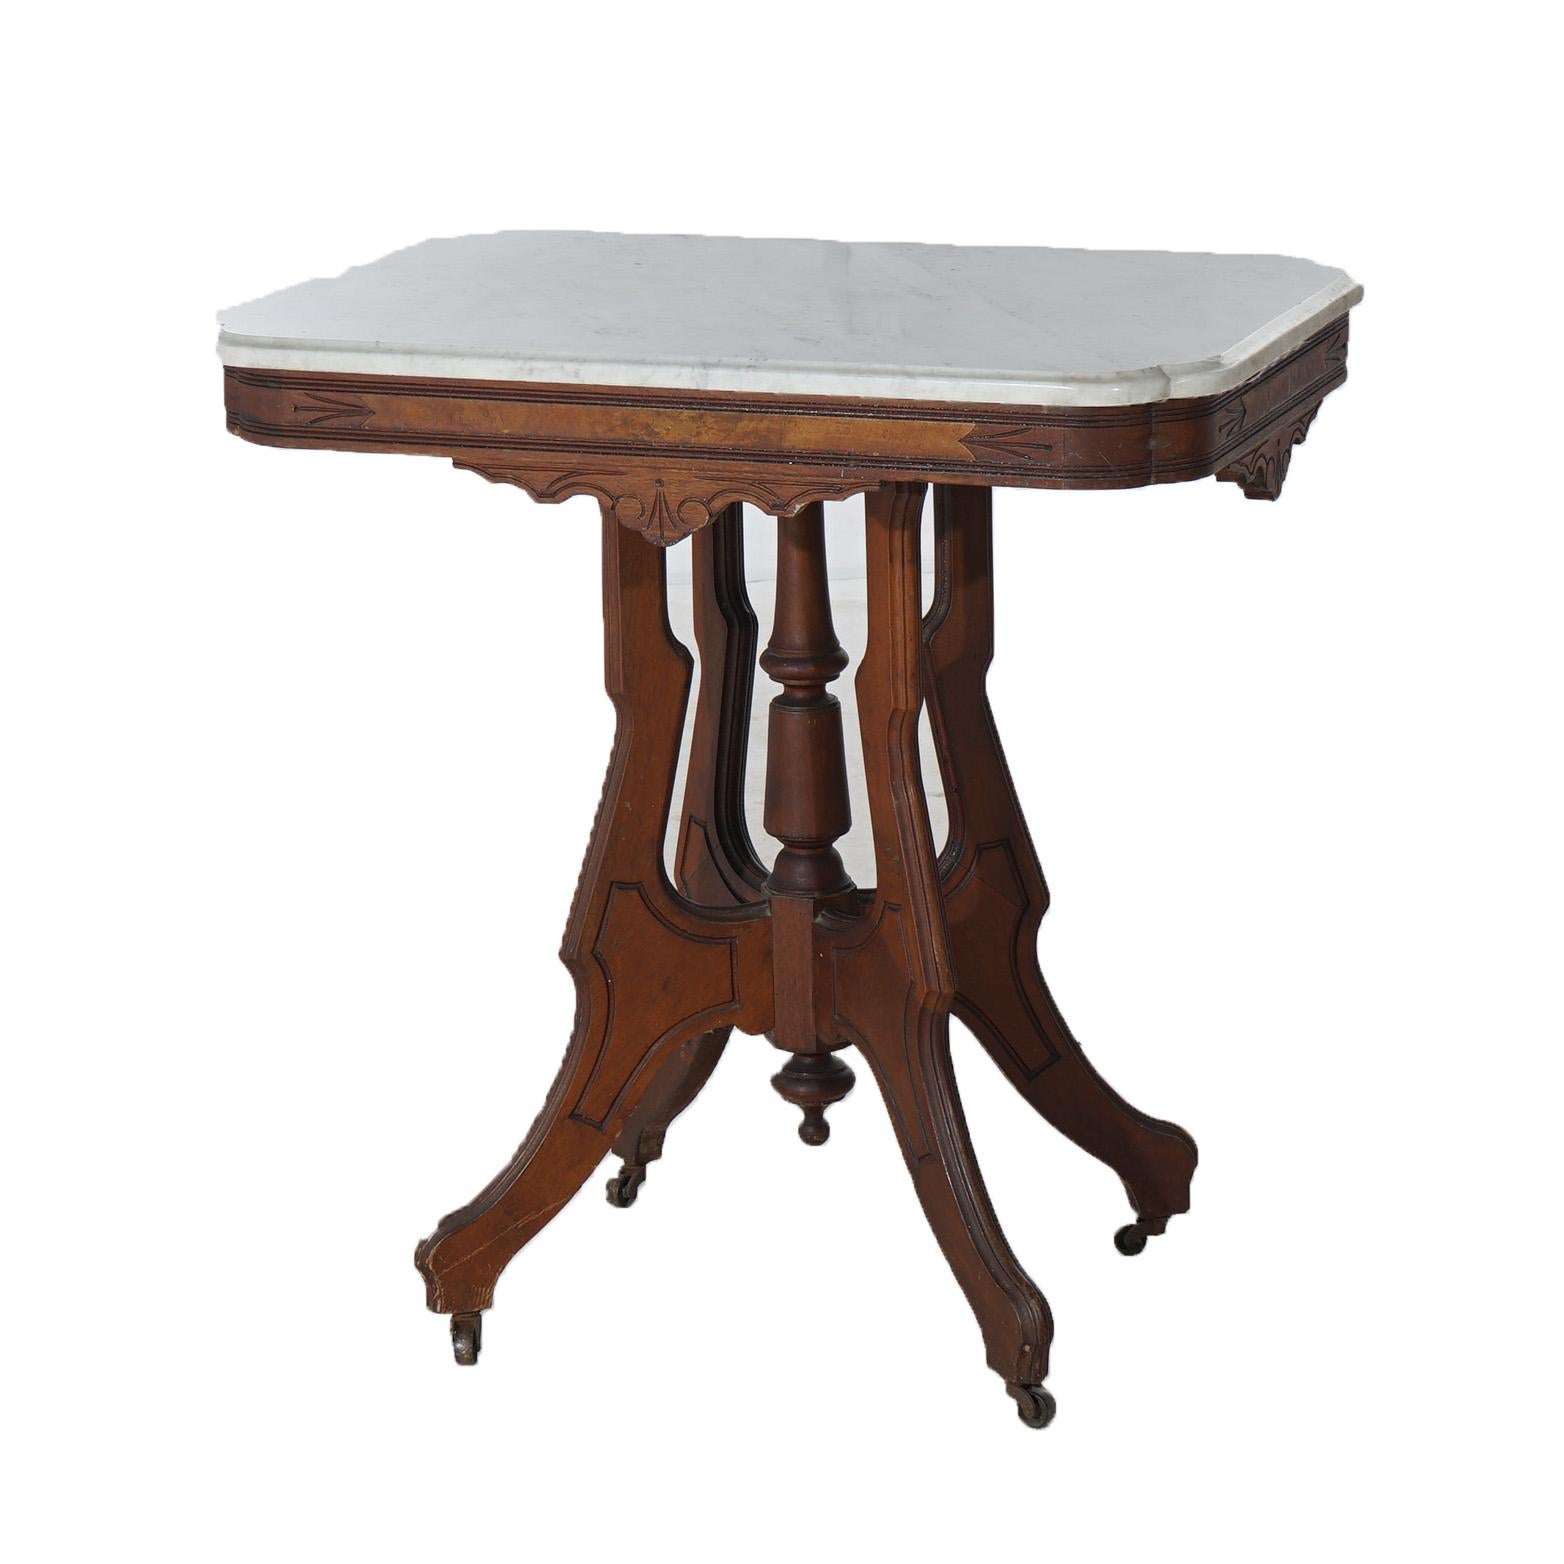 Antiker viktorianischer Eastlake Tisch mit geschnitztem Nussbaum und Wurzelholz mit abgeschrägter Marmorplatte über stilisierten Beinen in Form einer Schnecke mit zentralem Abschluss, um 1890

Maße - 29 3/4